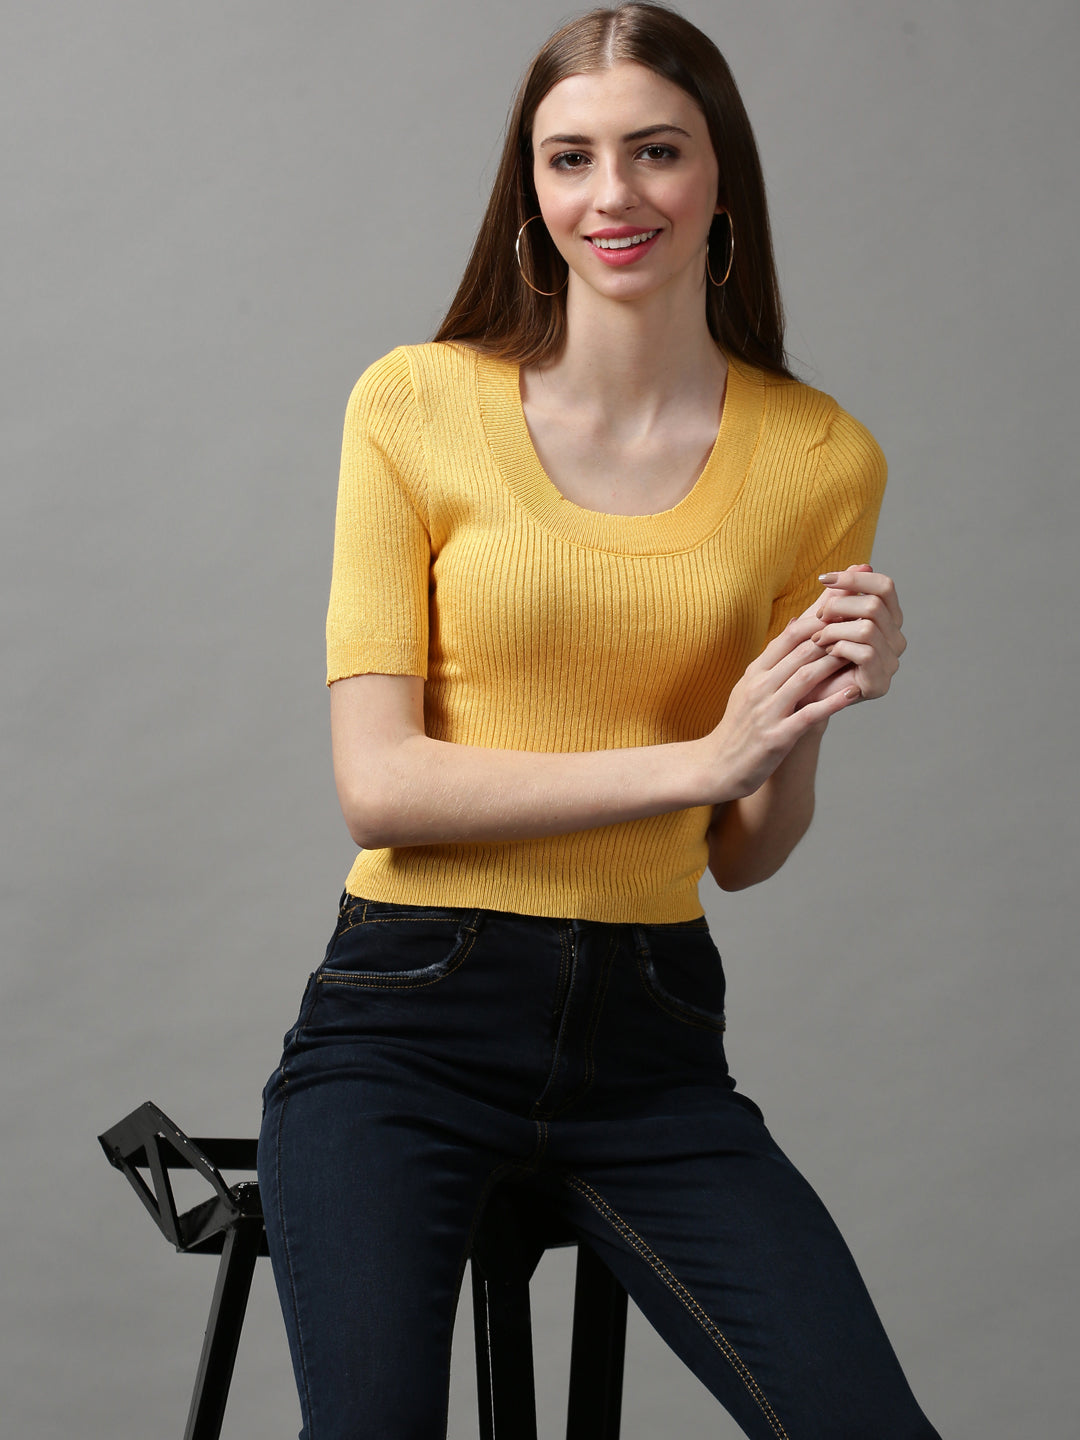 Women's Yellow Solid Top